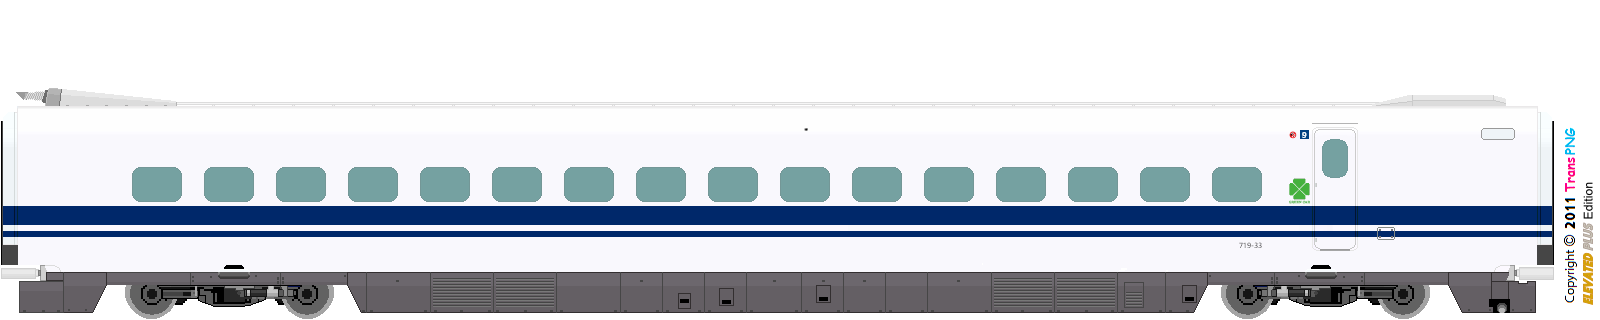 9010 - [9010] Central Japan Railway 52286607407_0b8d406d91_o